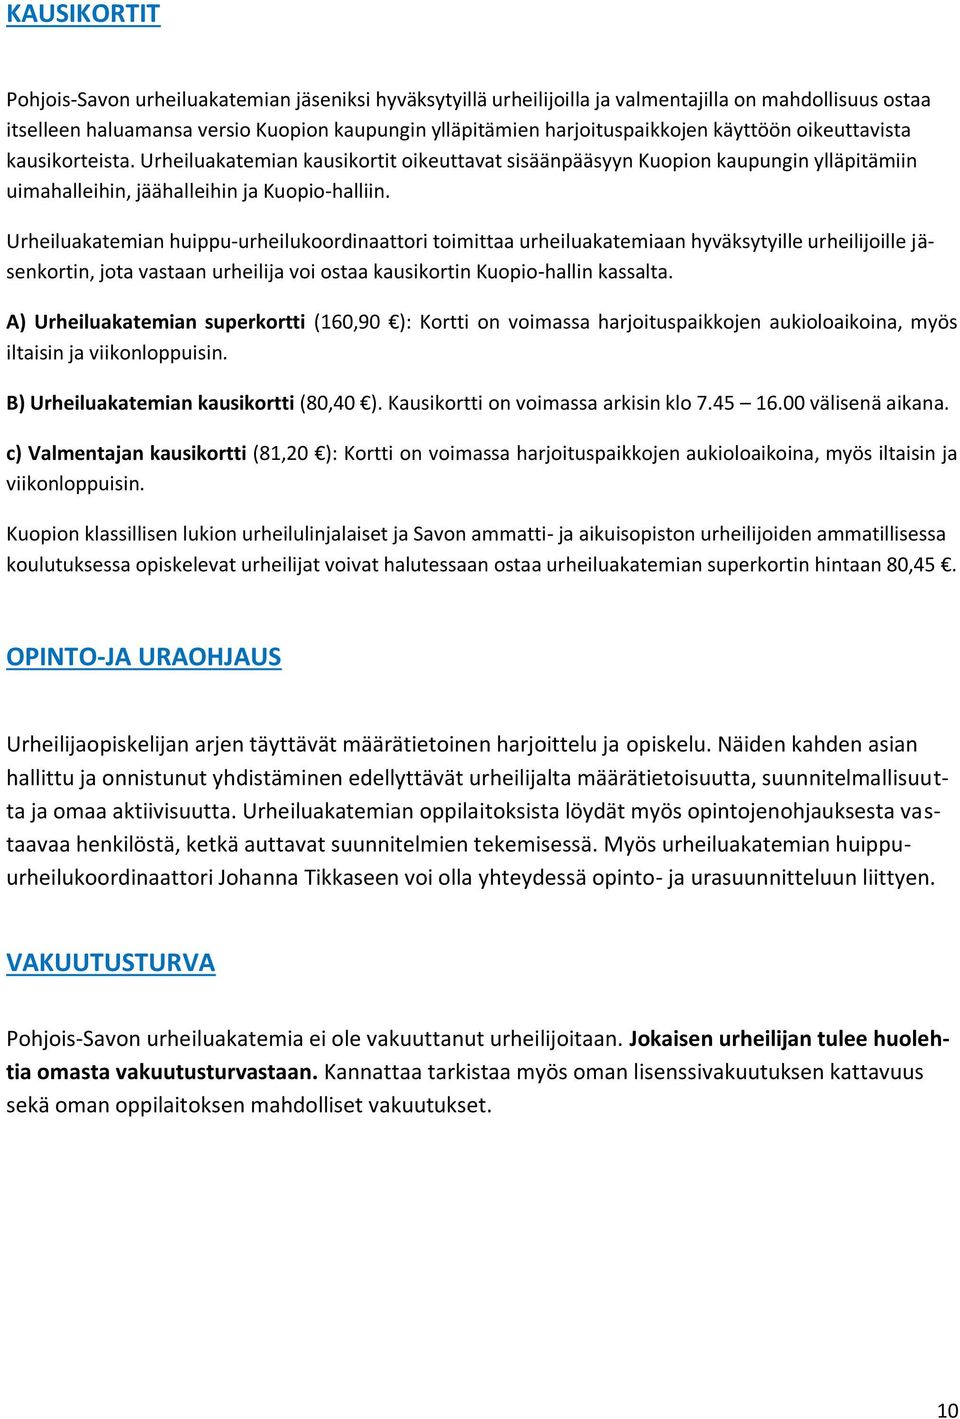 Urheiluakatemian huippu-urheilukoordinaattori toimittaa urheiluakatemiaan hyväksytyille urheilijoille jäsenkortin, jota vastaan urheilija voi ostaa kausikortin Kuopio-hallin kassalta.